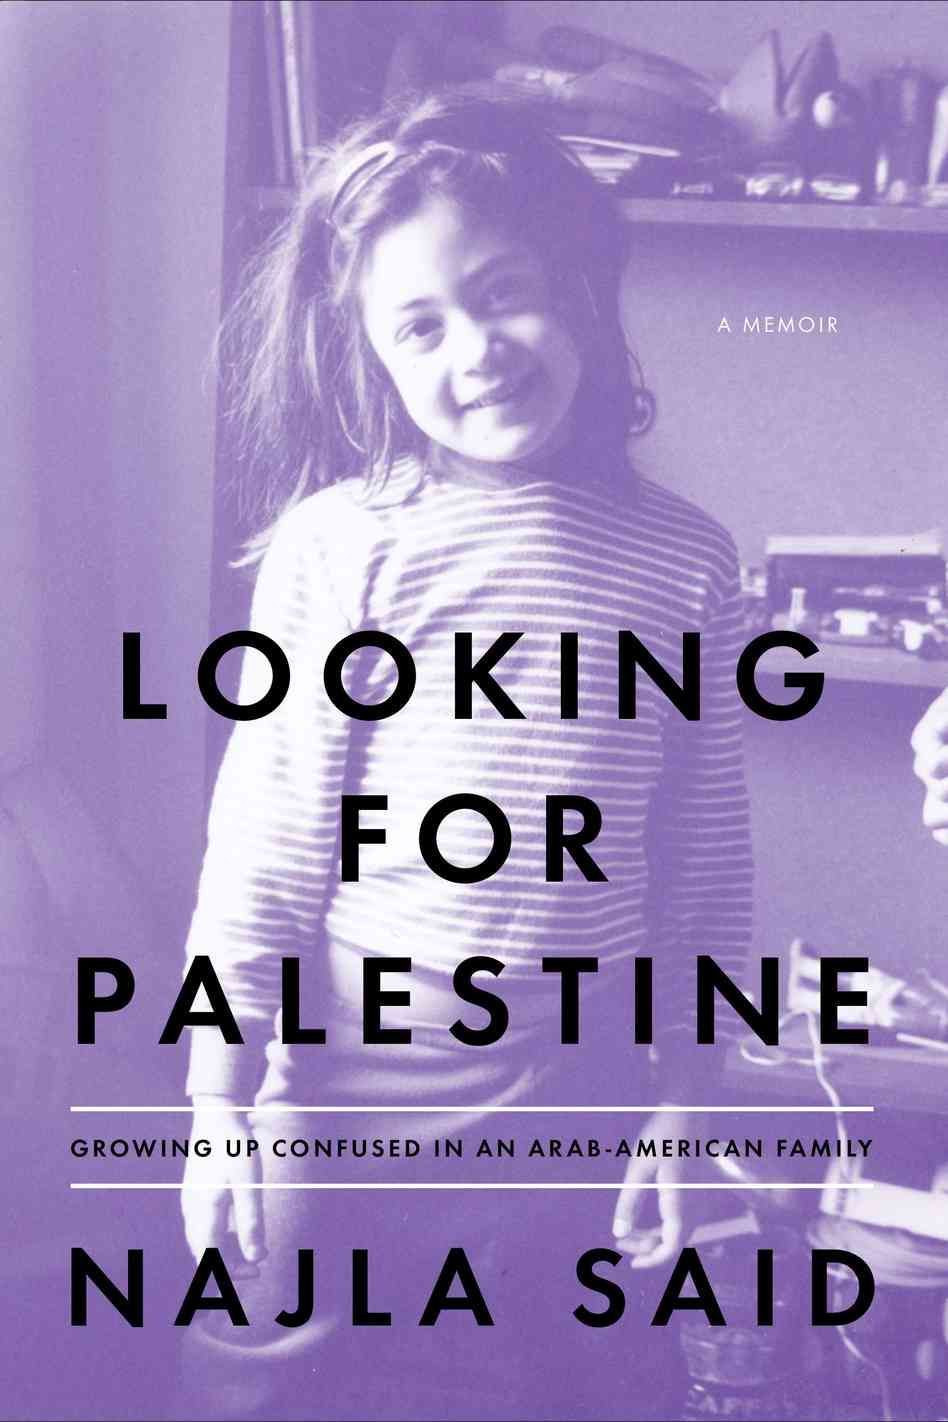 He Said, She Said: Najla Said’s “Looking for Palestine”